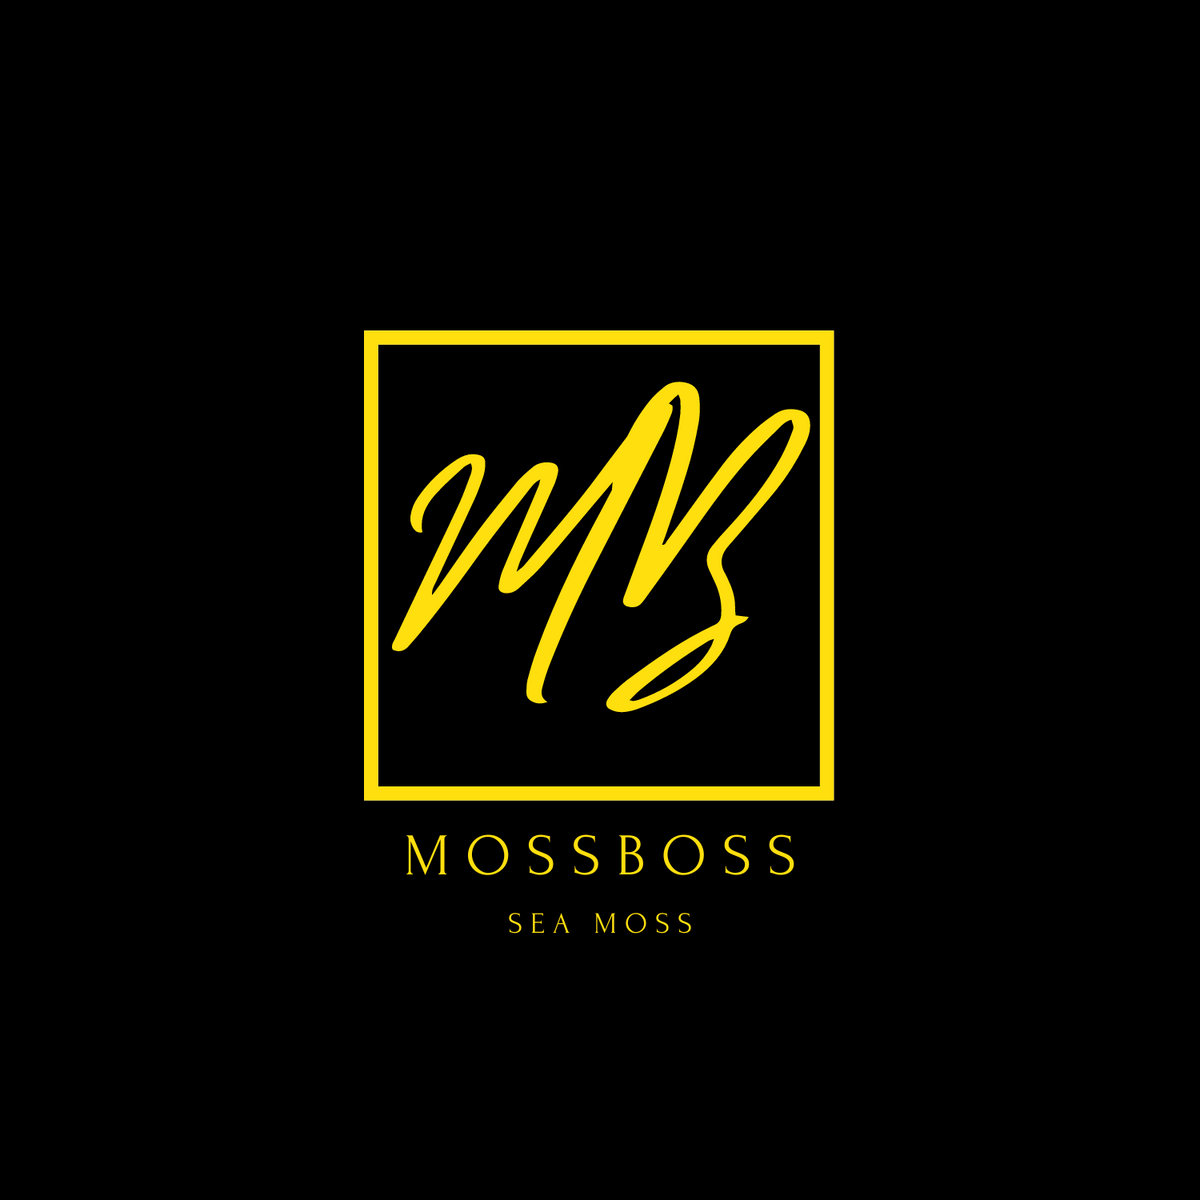 Moss Boss LLC – The Official Moss Boss